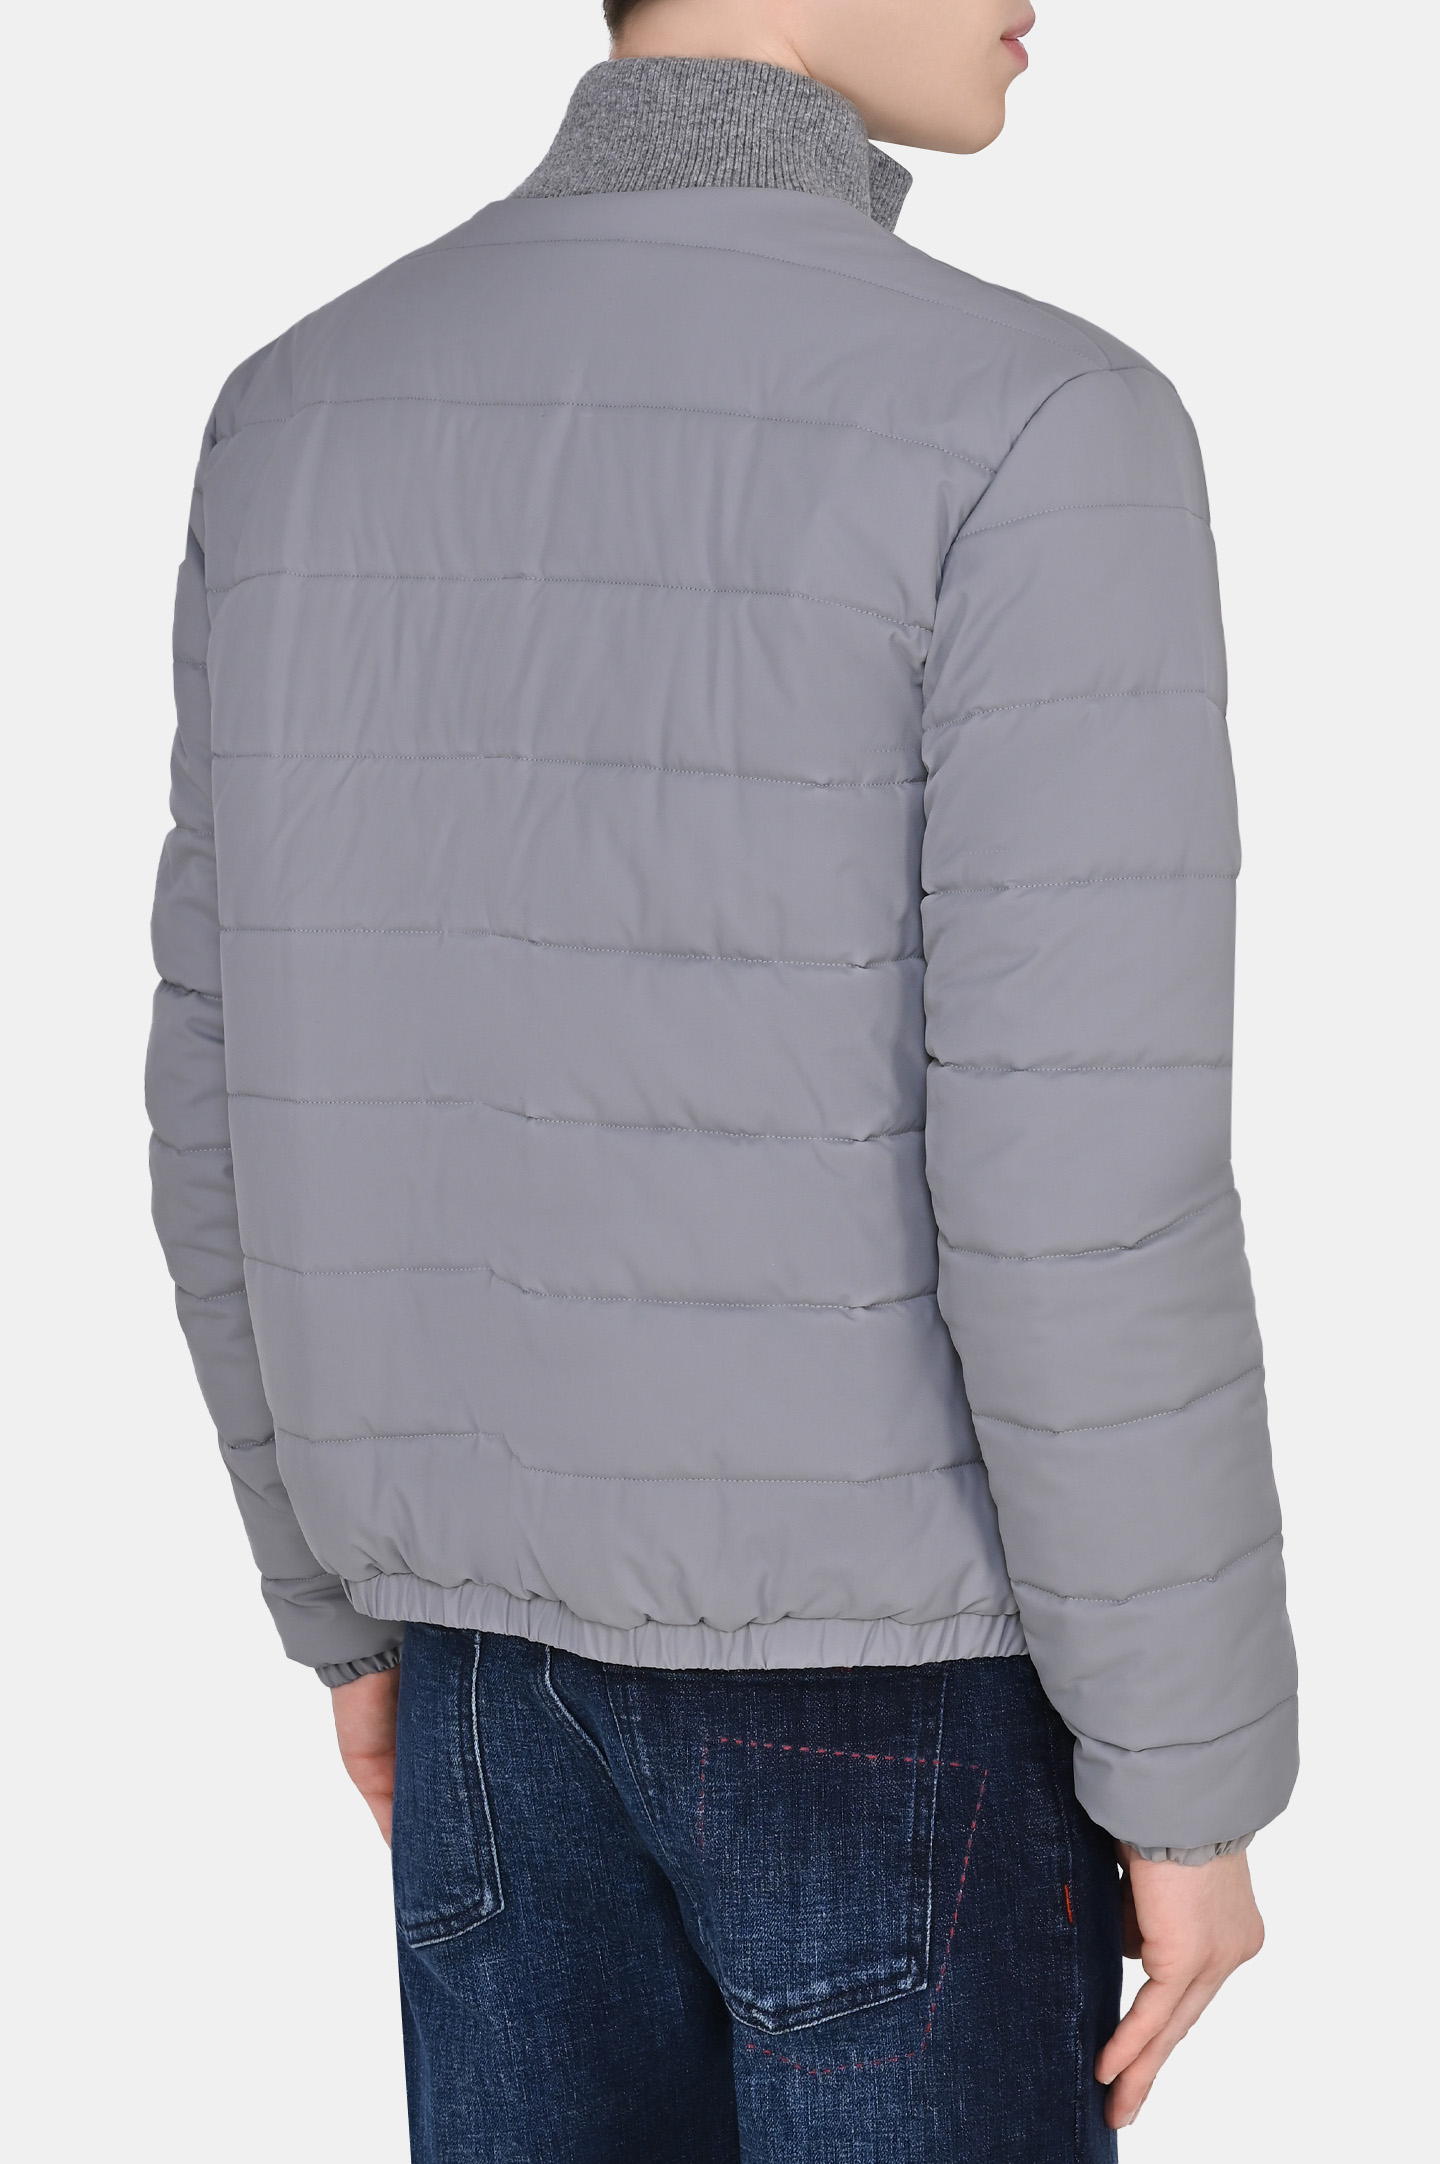 Куртка KITON UW1264AV0388B0, цвет: Серый, Мужской